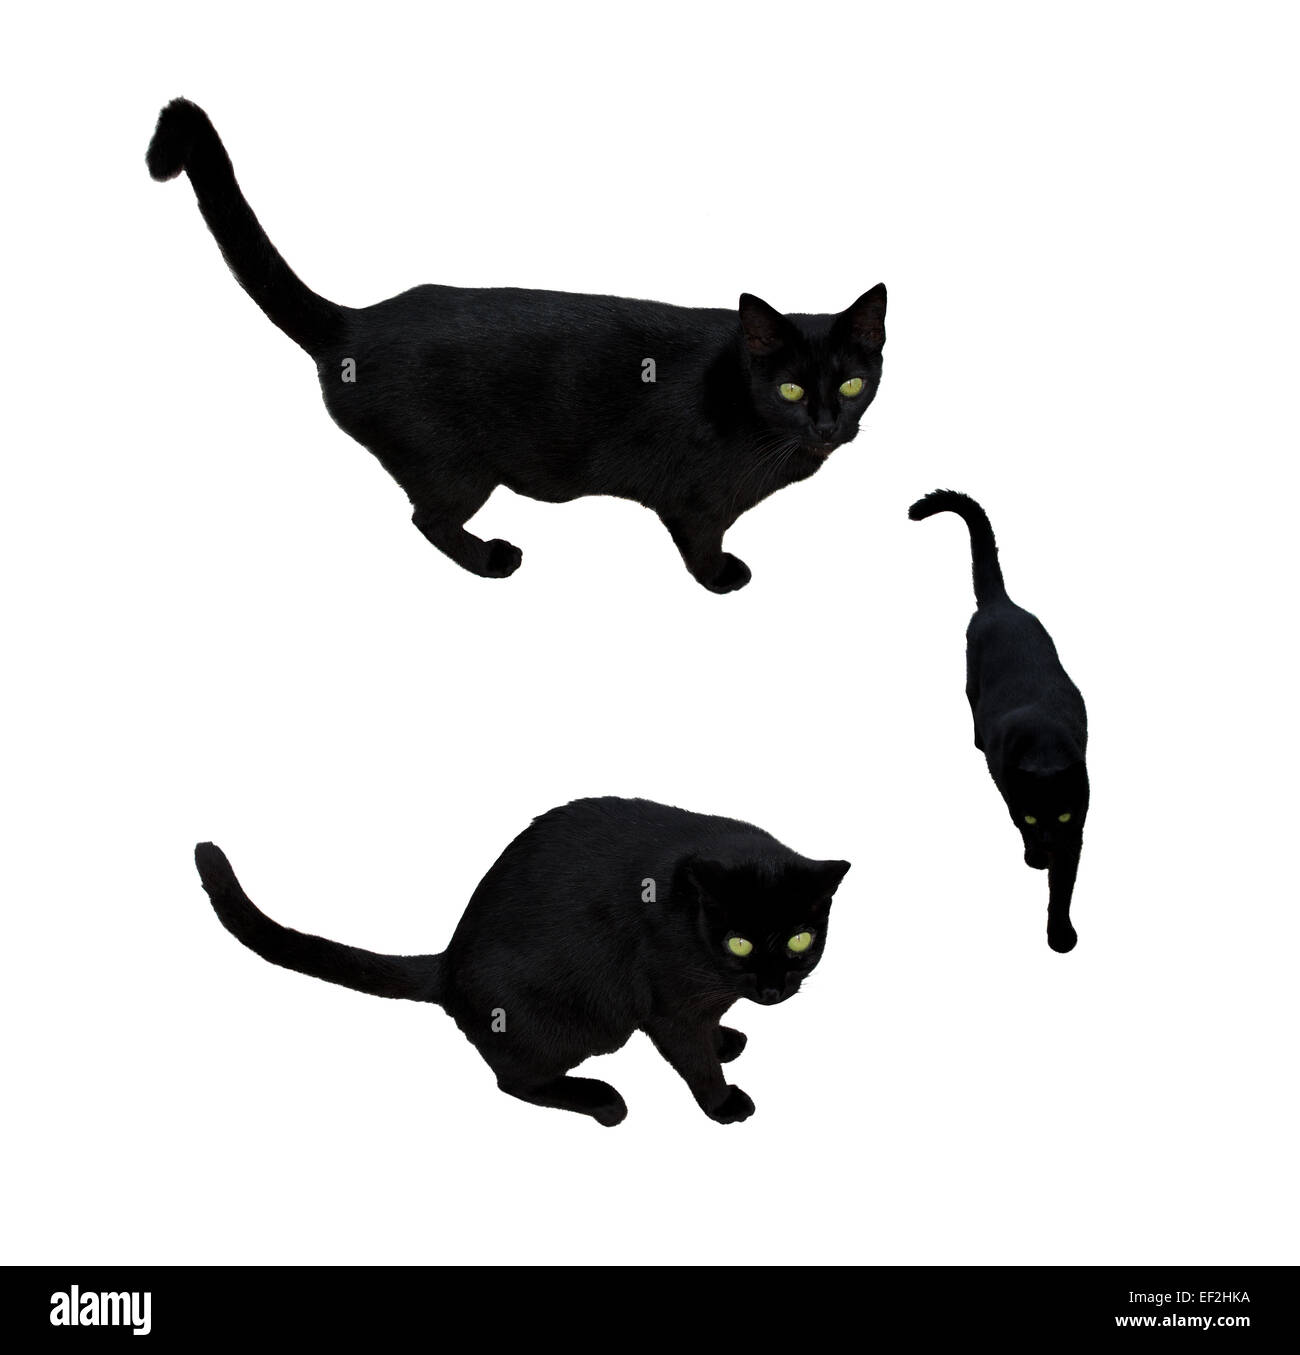 Gato negro con ojos verdes en tres posiciones, caminando, mirando, aislado en blanco. Foto de stock